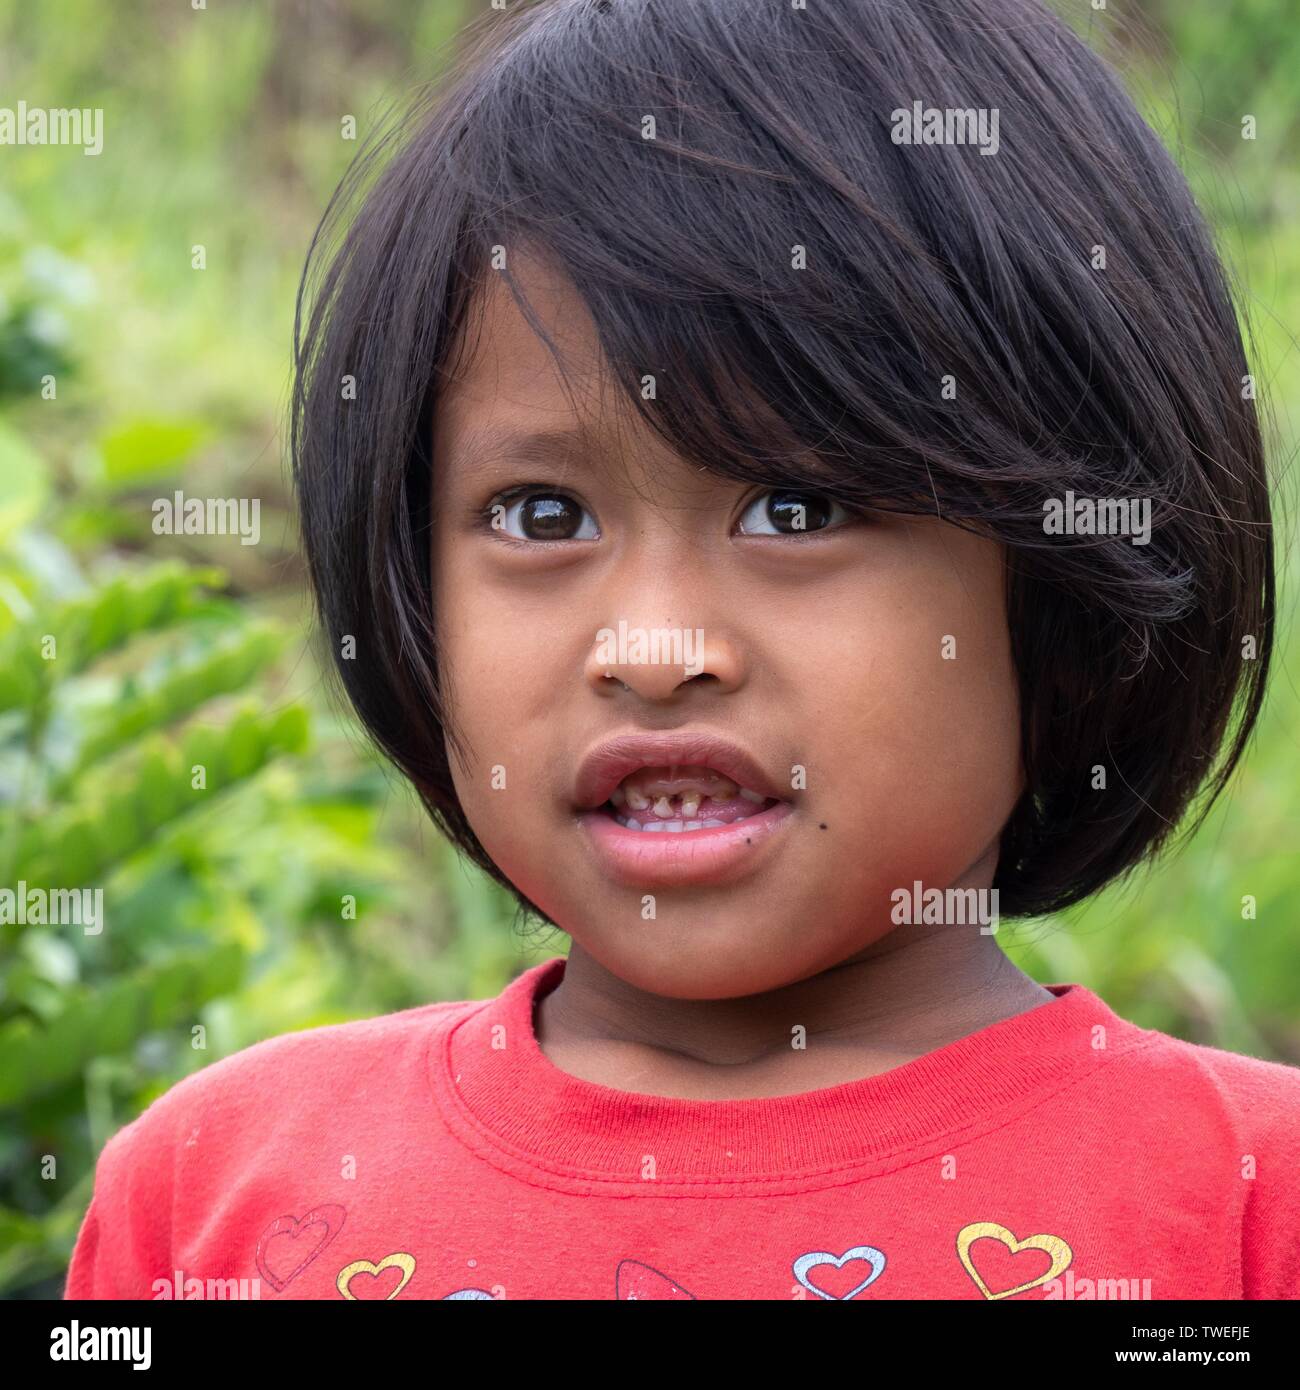 Little girl with bad teeth, portrait, Bali, Indonesia Stock Photo